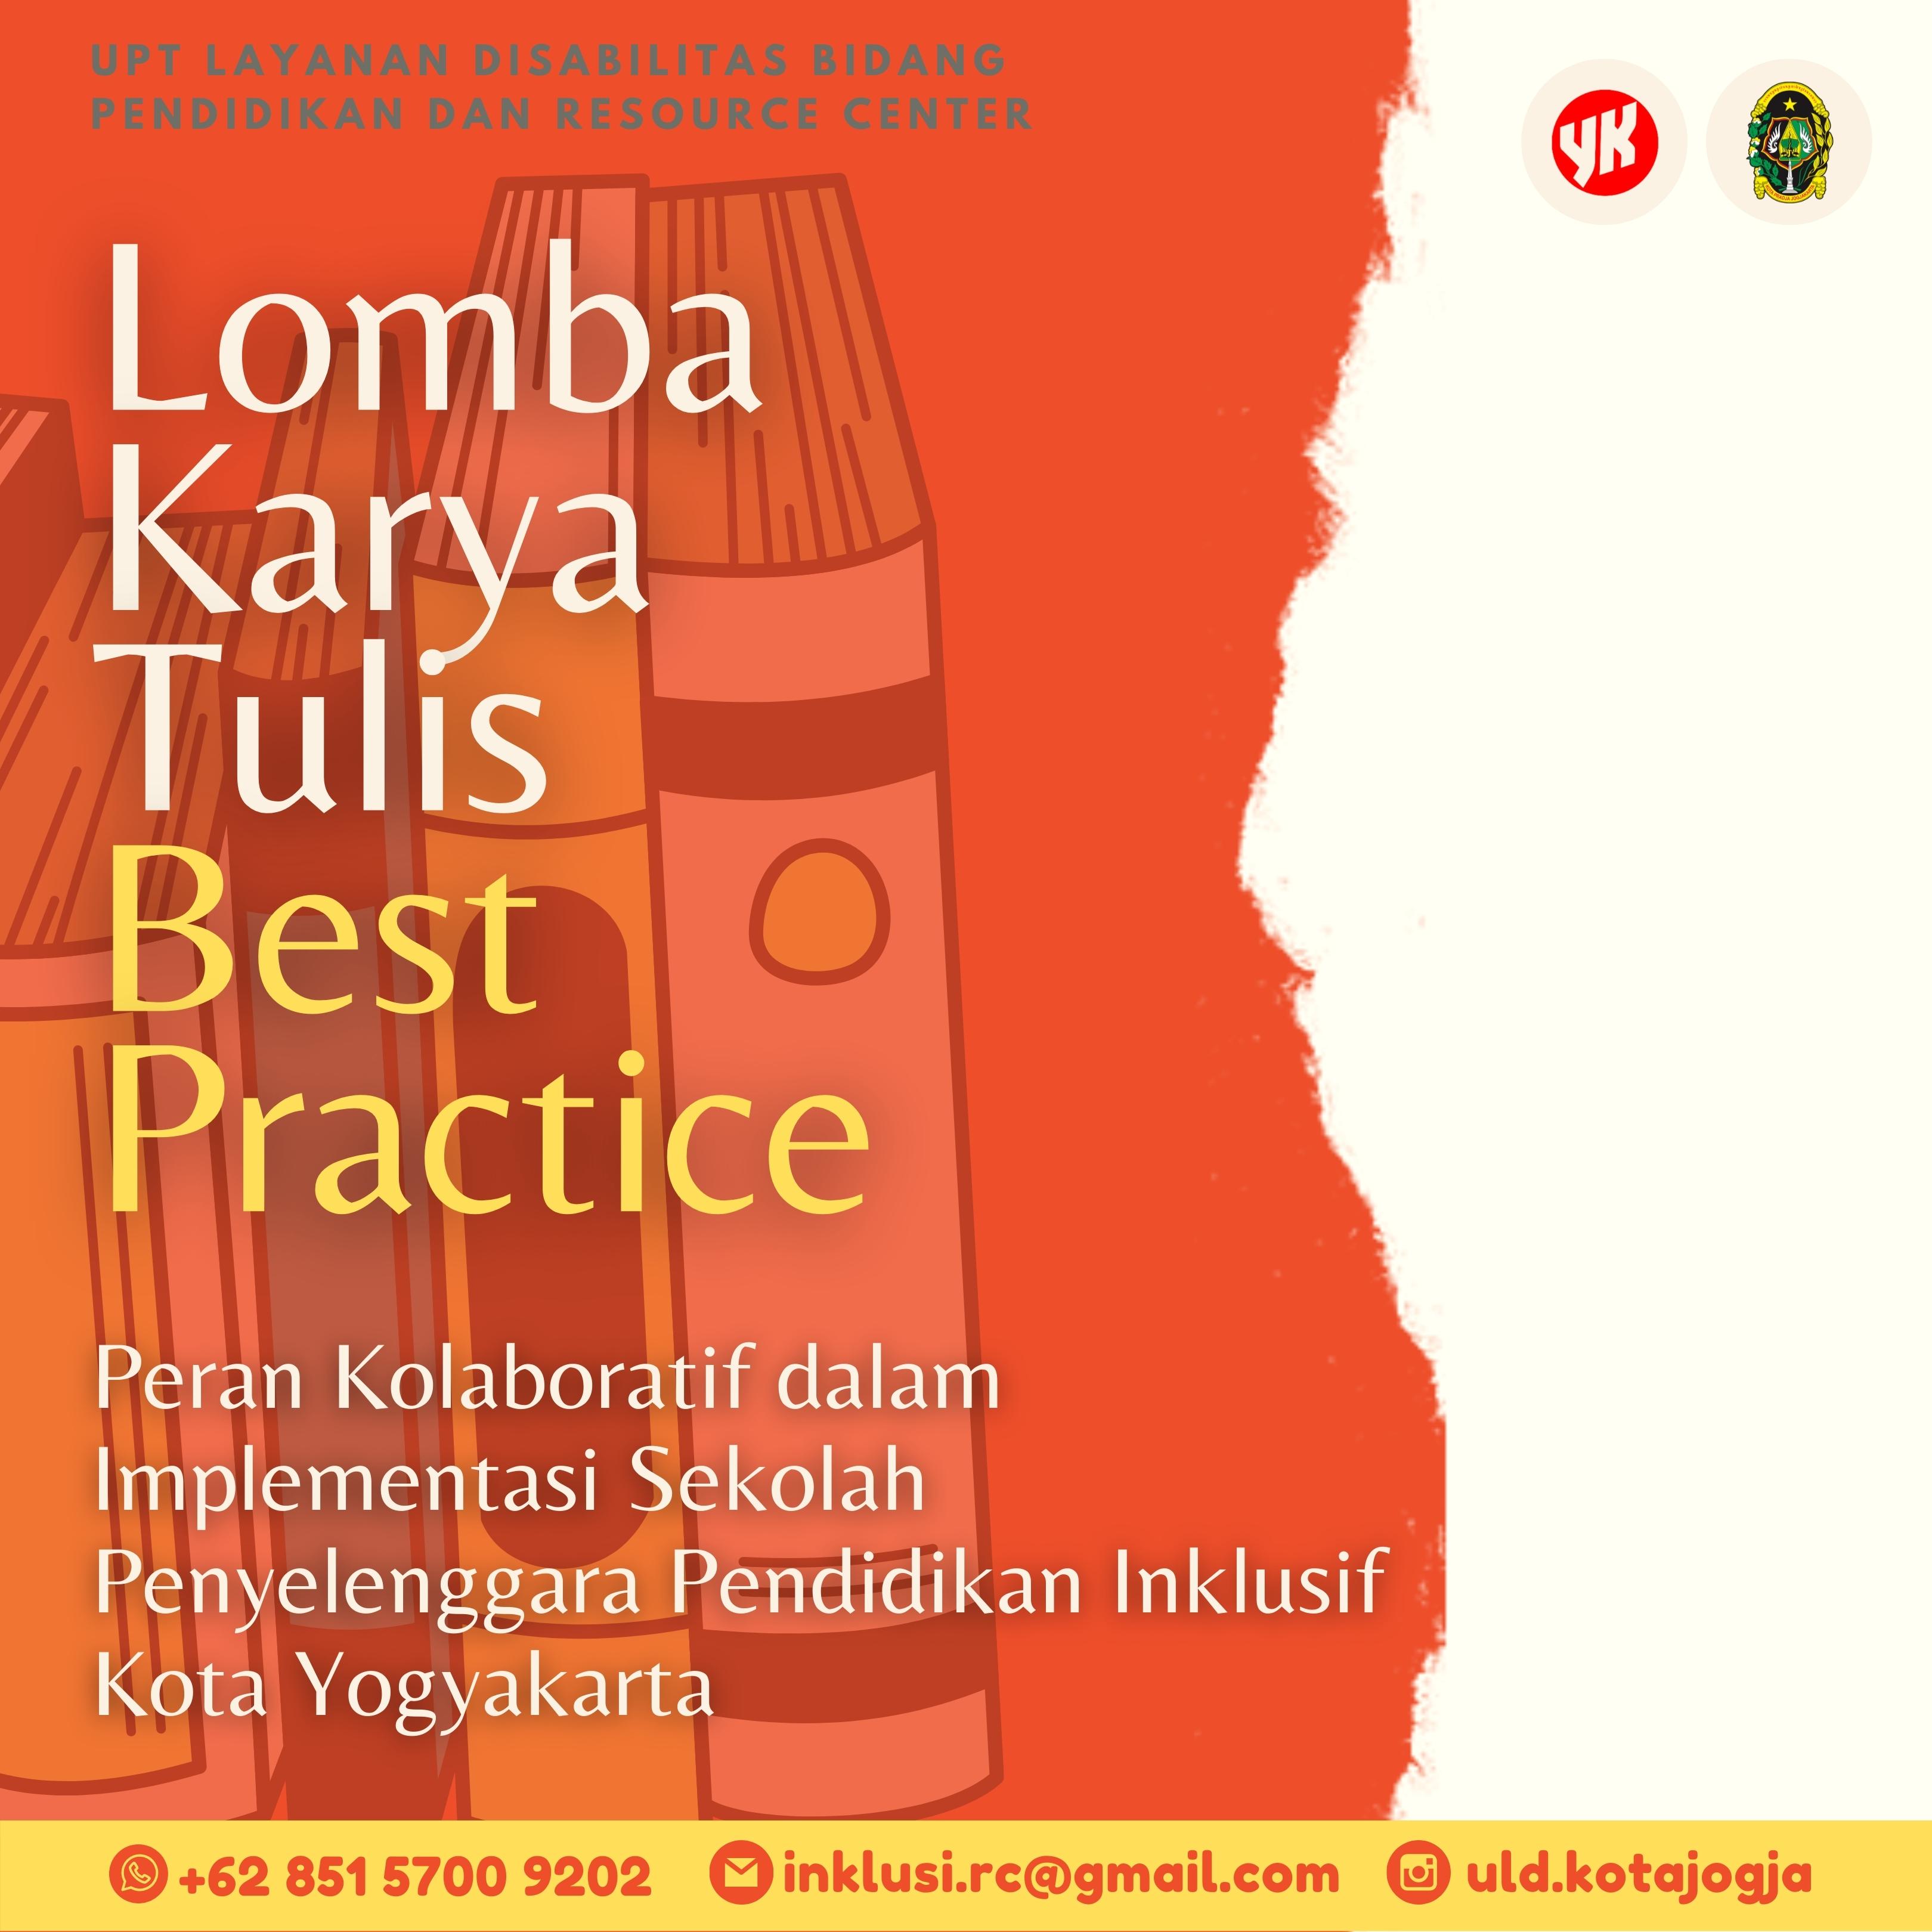 Rincian Lomba Karya Tulis Best Practice Tentang Pendidikan Inklusi